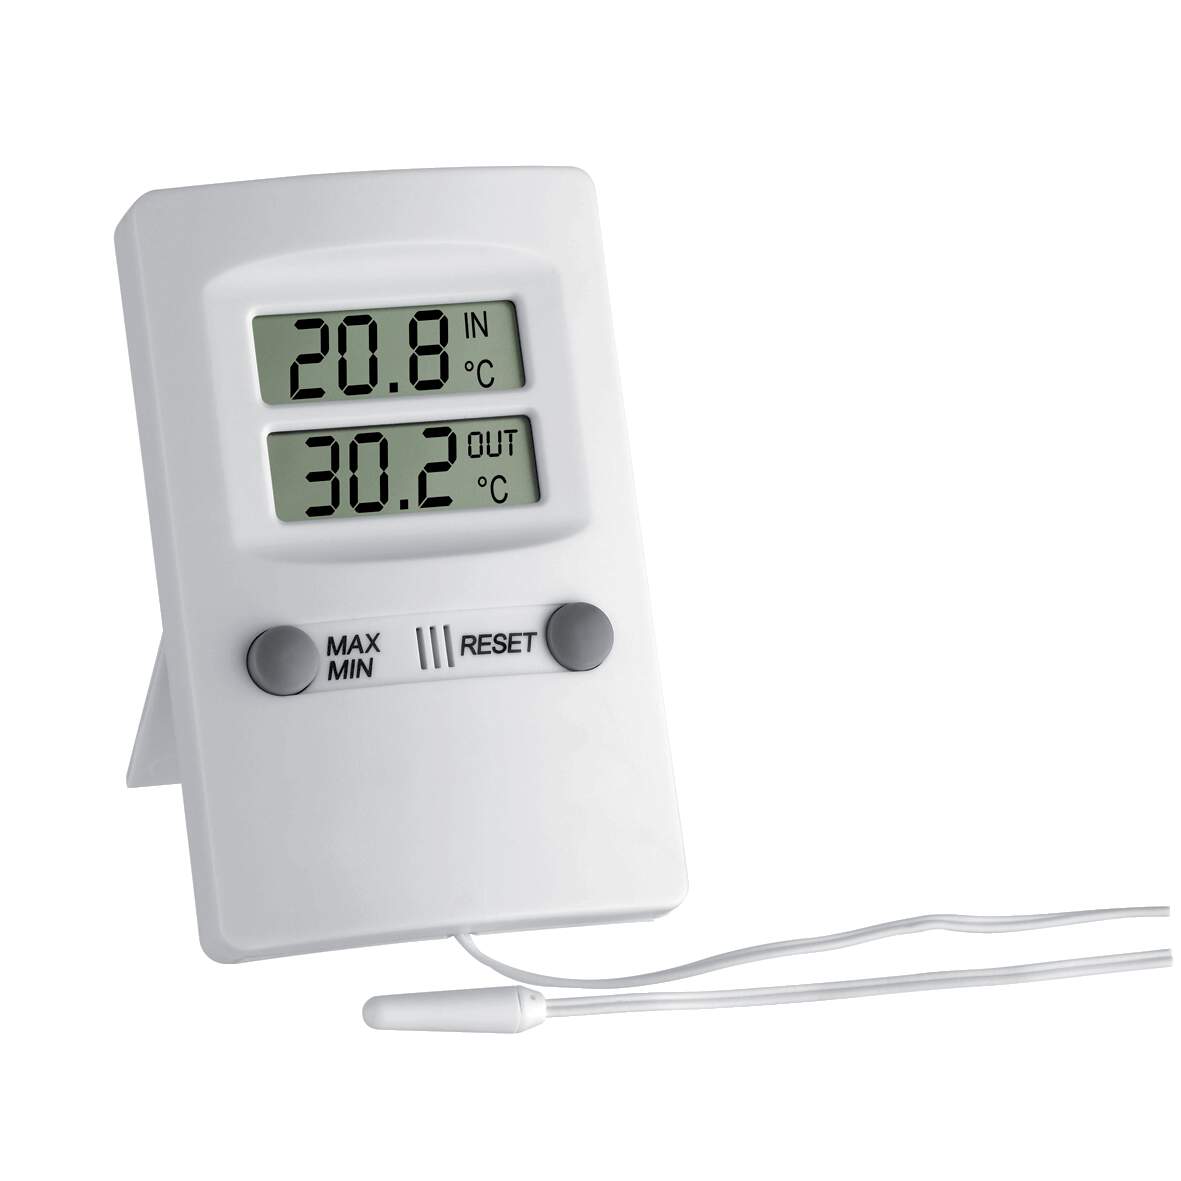 1215909 - Digitales Innen-Aussen-Thermometer weiß